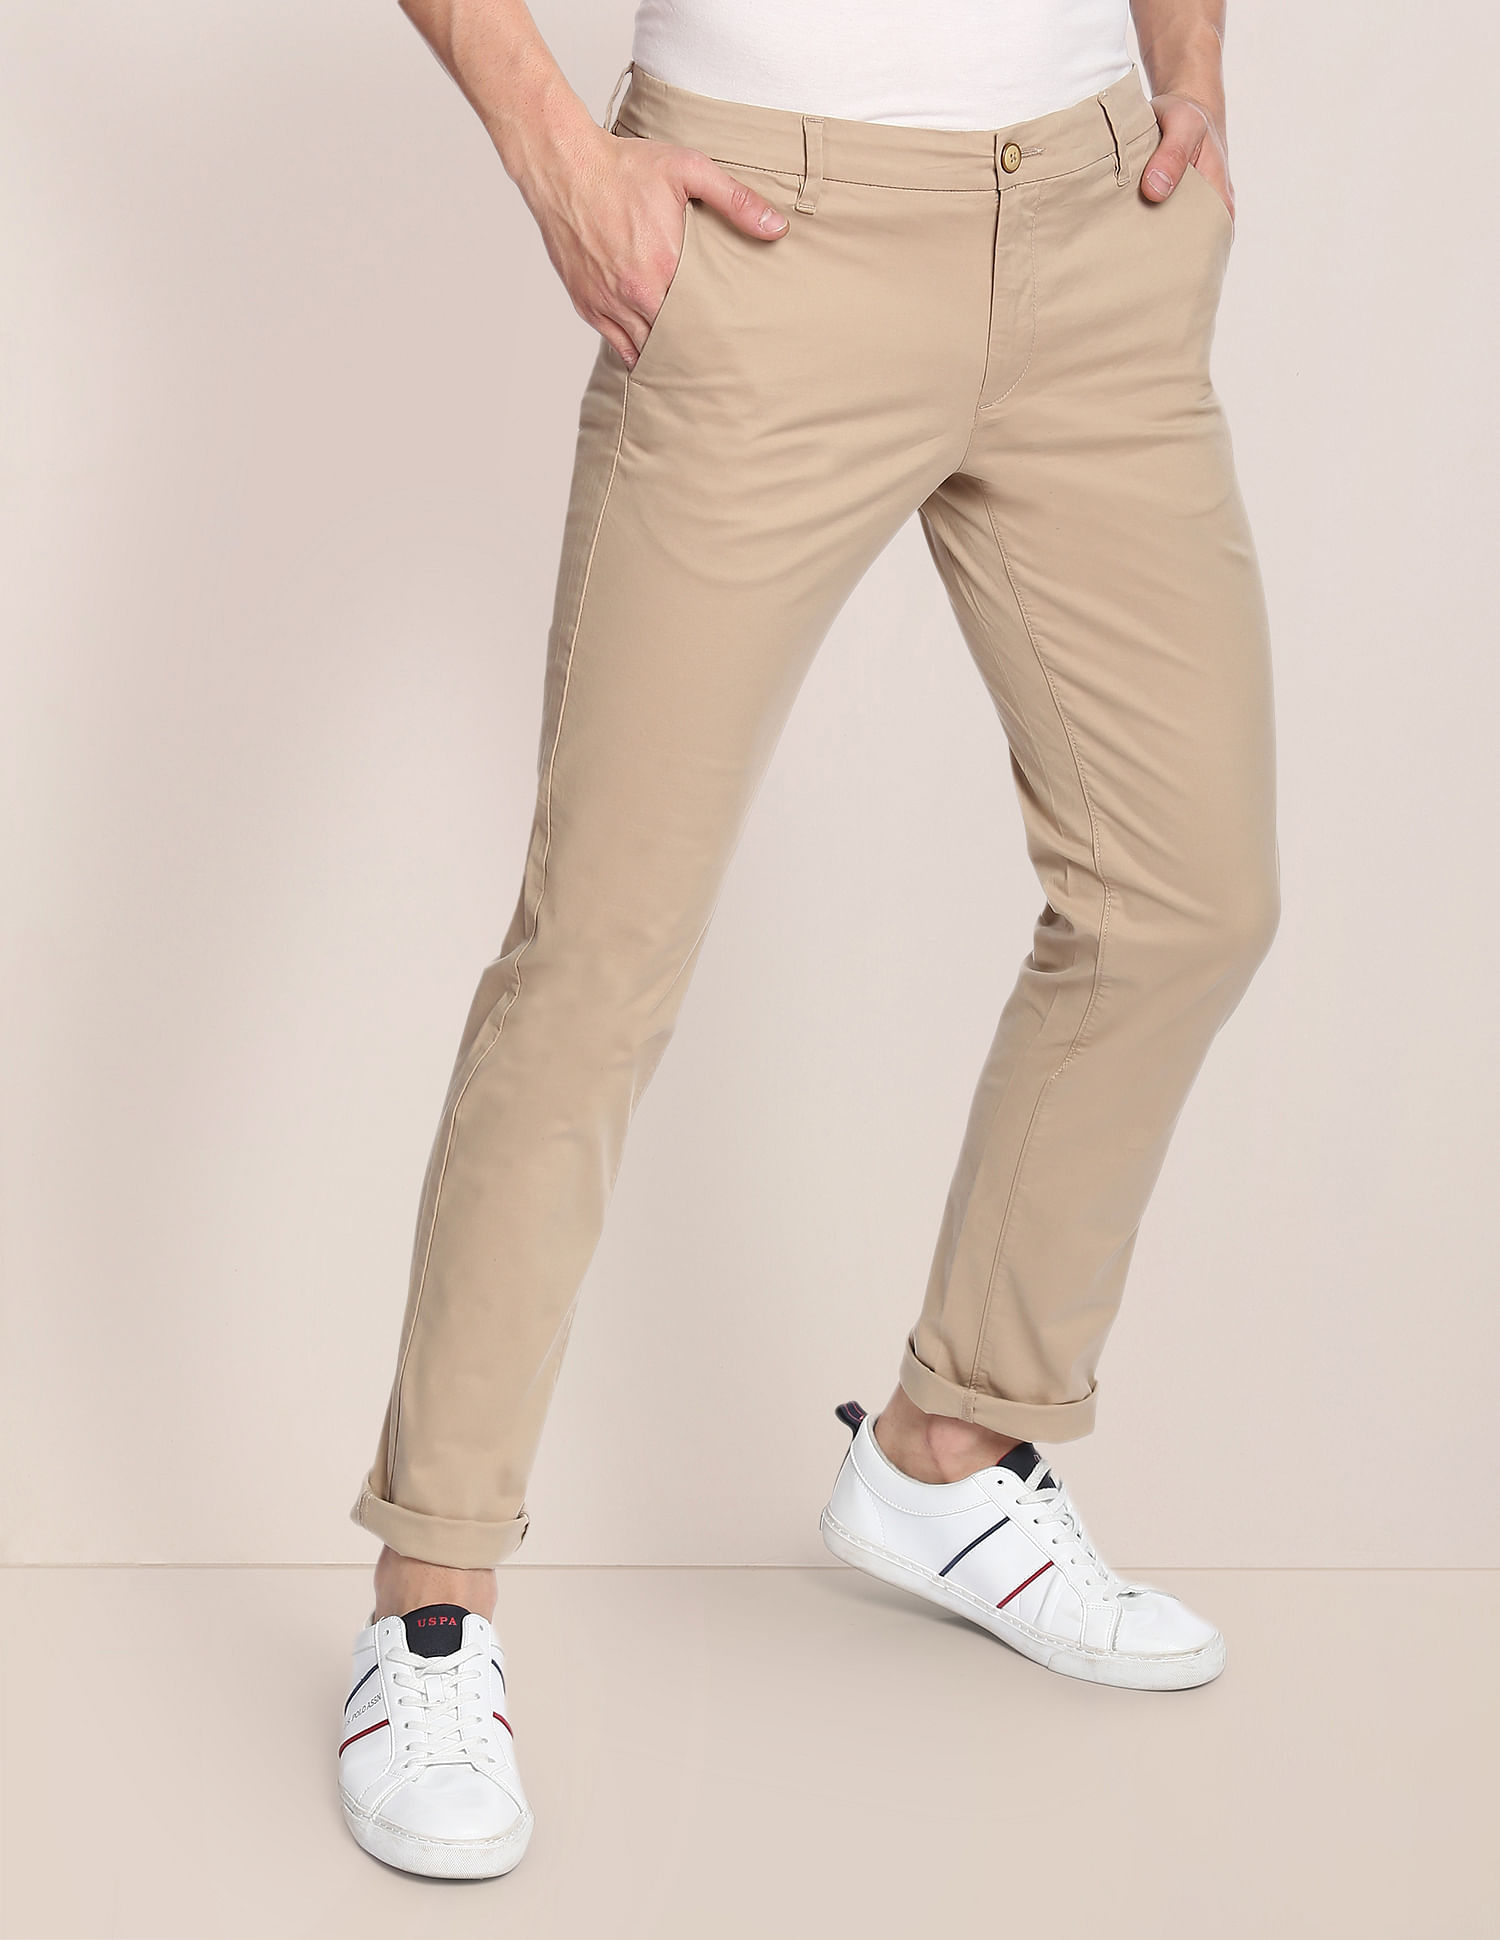 New Mens U.S. Polo Assn. Slim Straight Twill Chinos Pants W34 L32 Grey Mint  | eBay